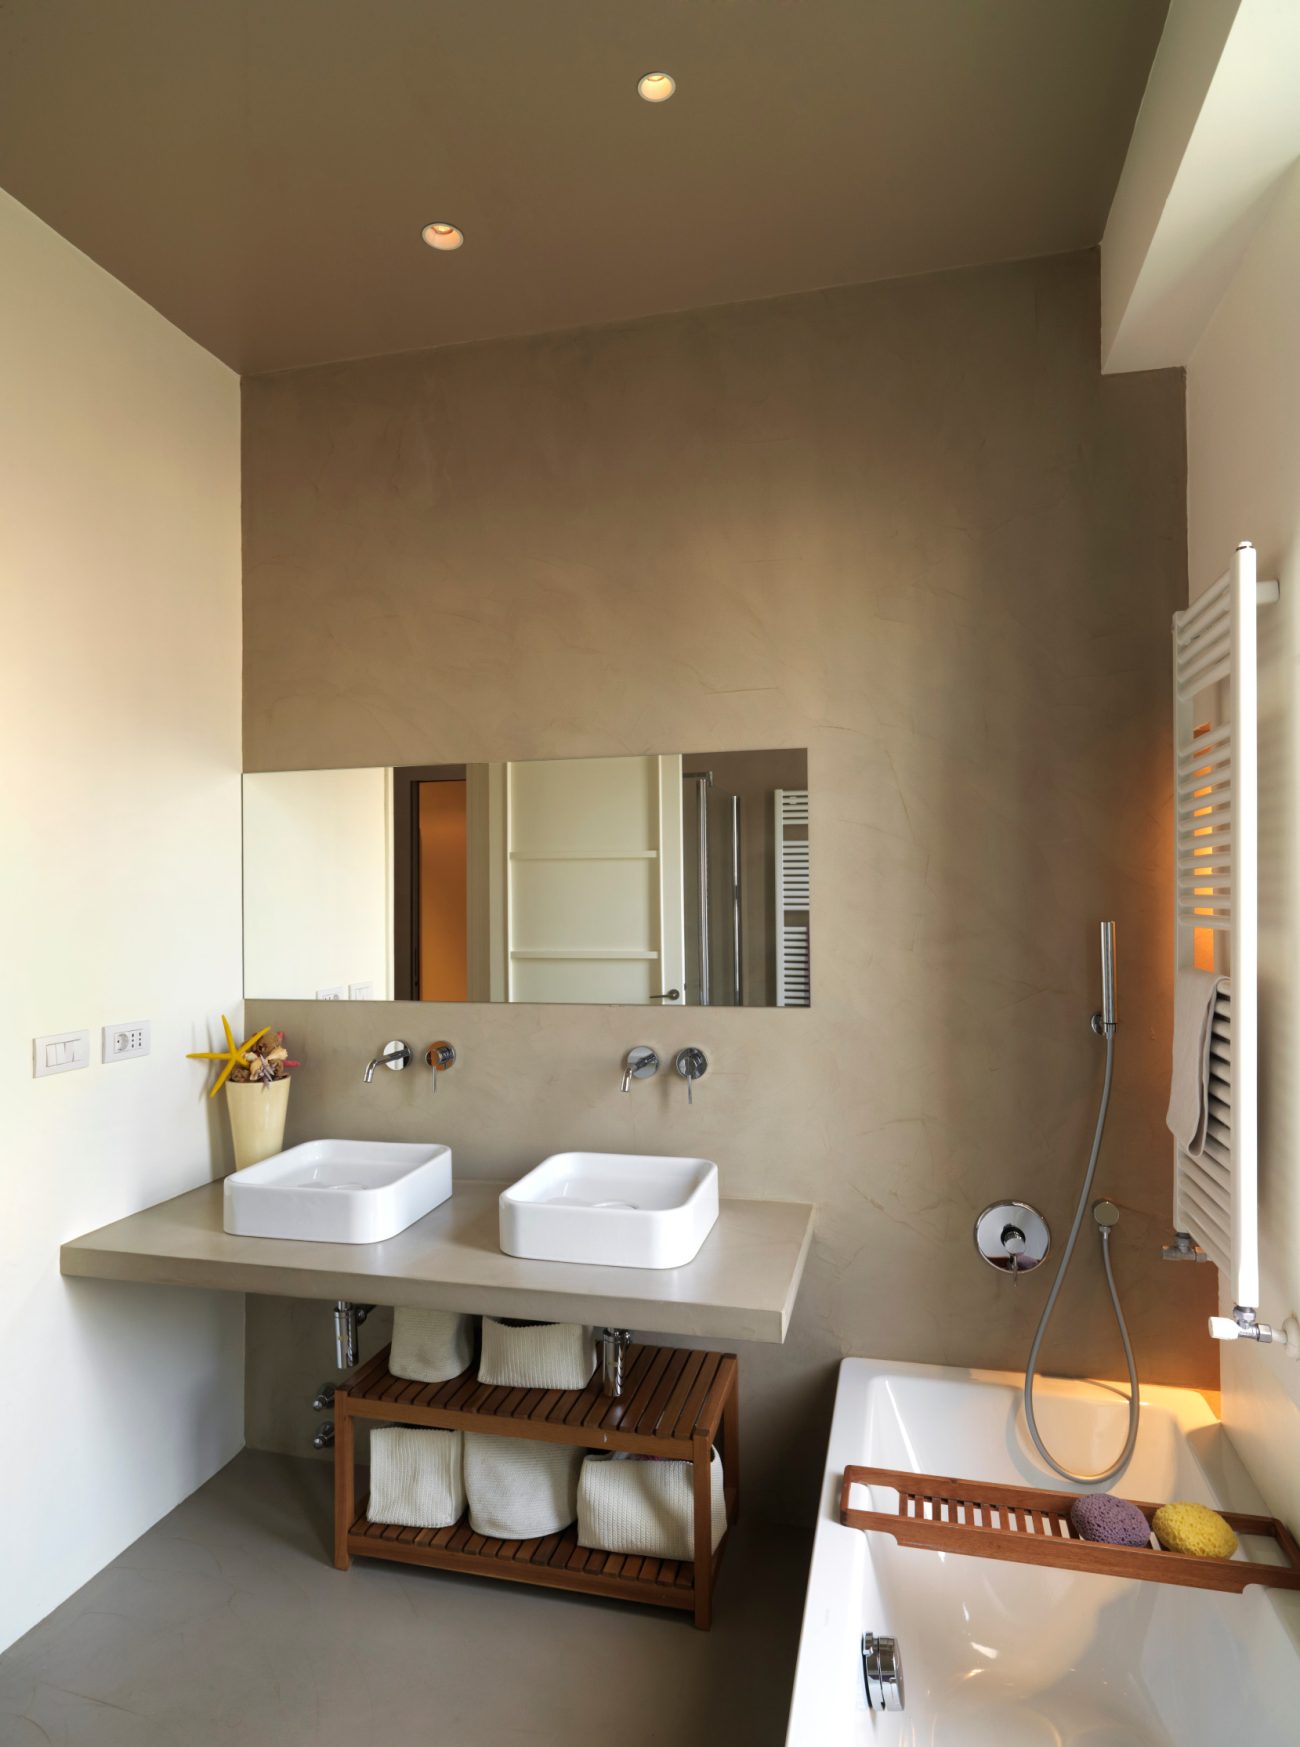 Intérieur d'une salle de bain contemporaine avec murs en résine grise